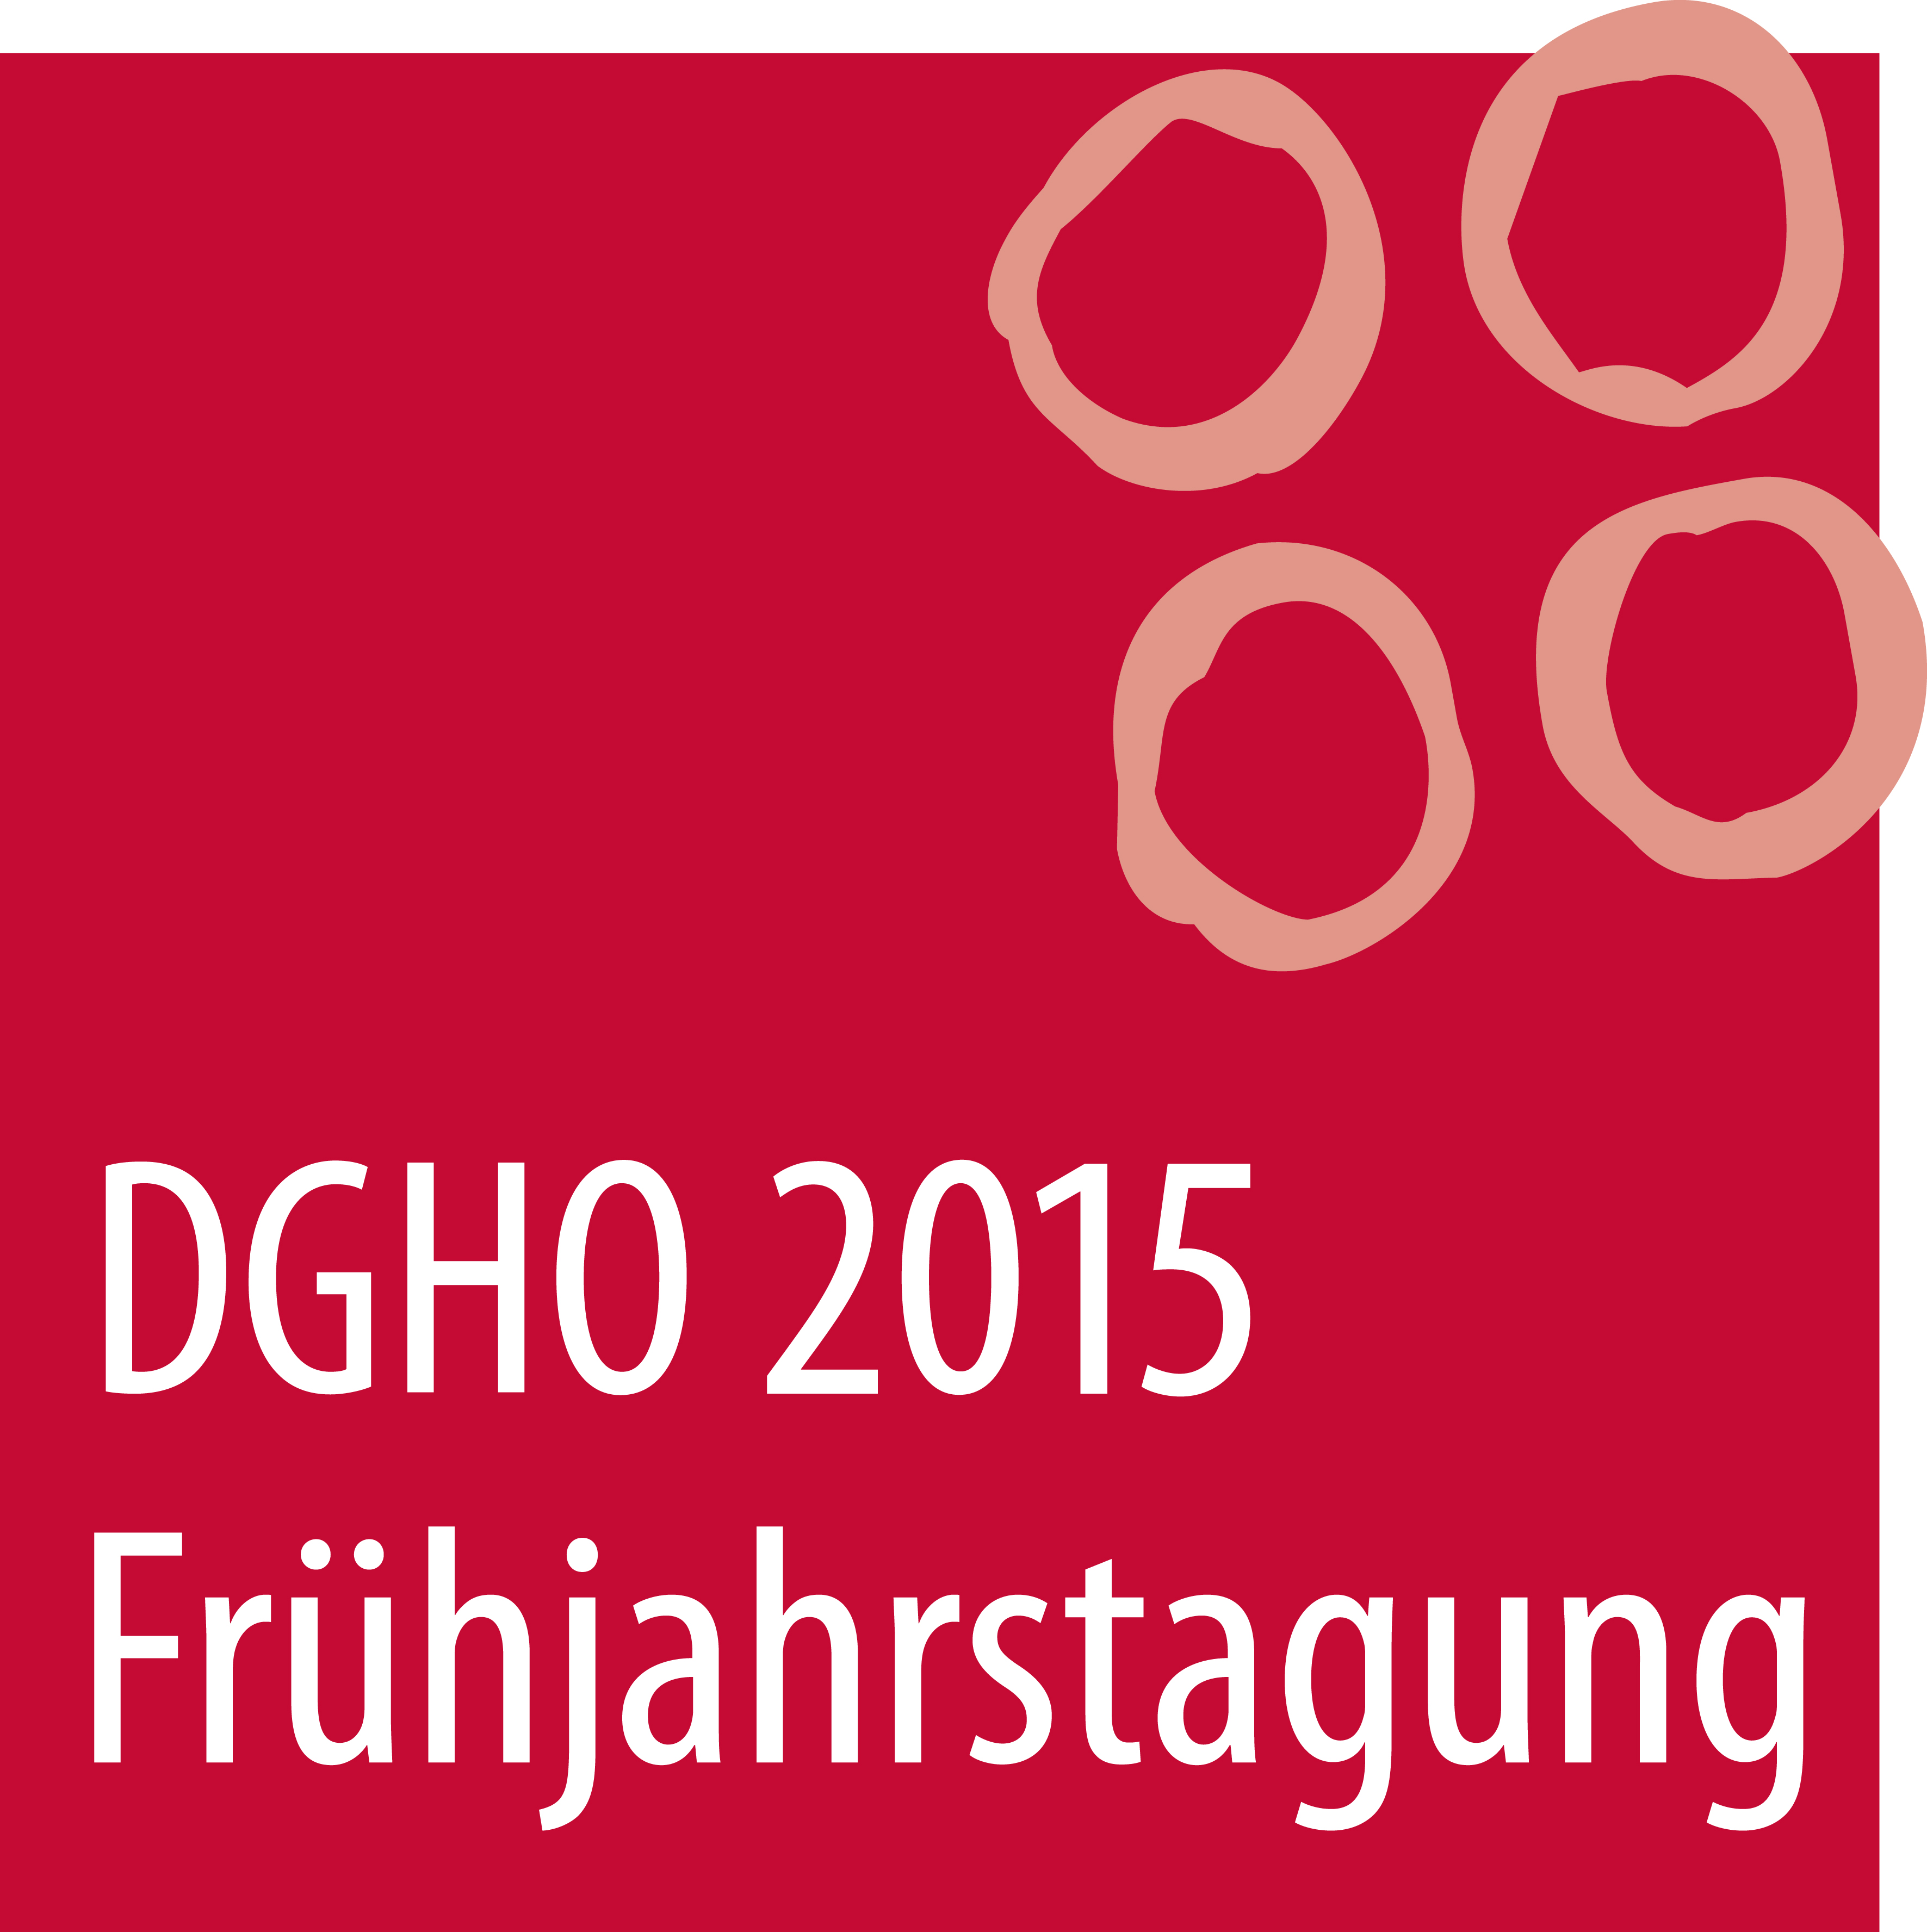 Logo_DGHO_FJT_2015.jpg